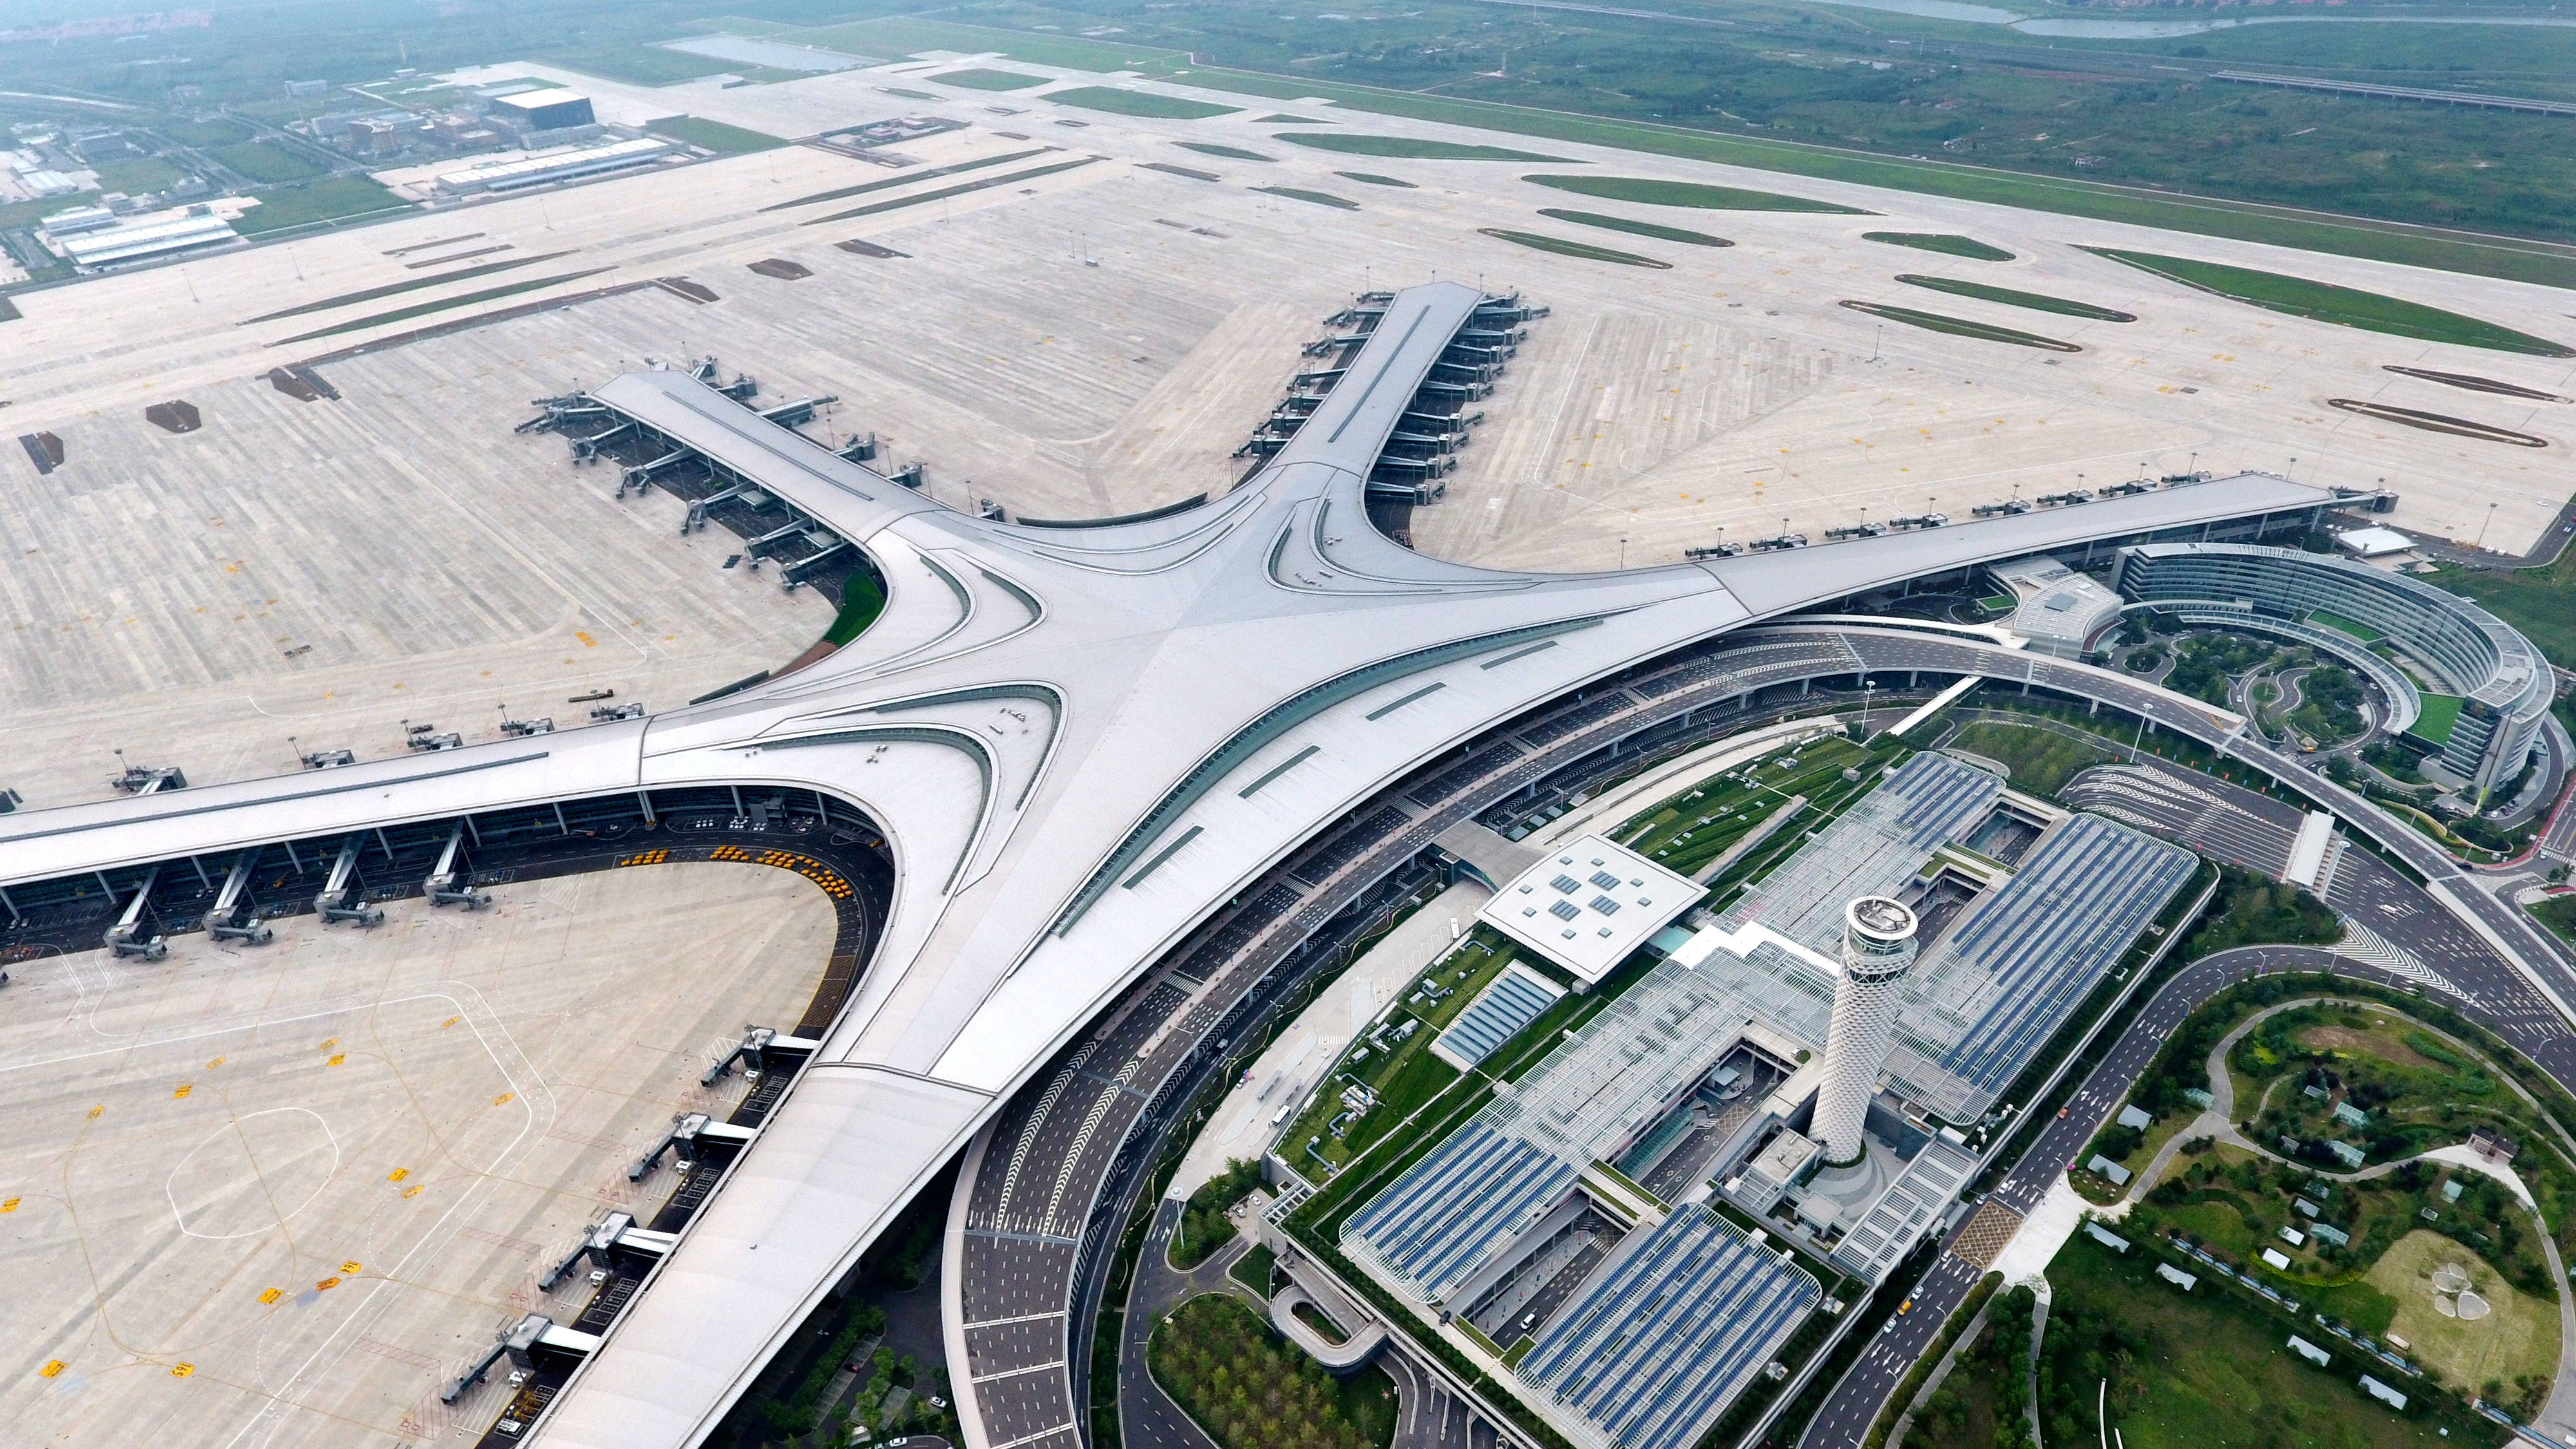 青岛胶州国际机场图片